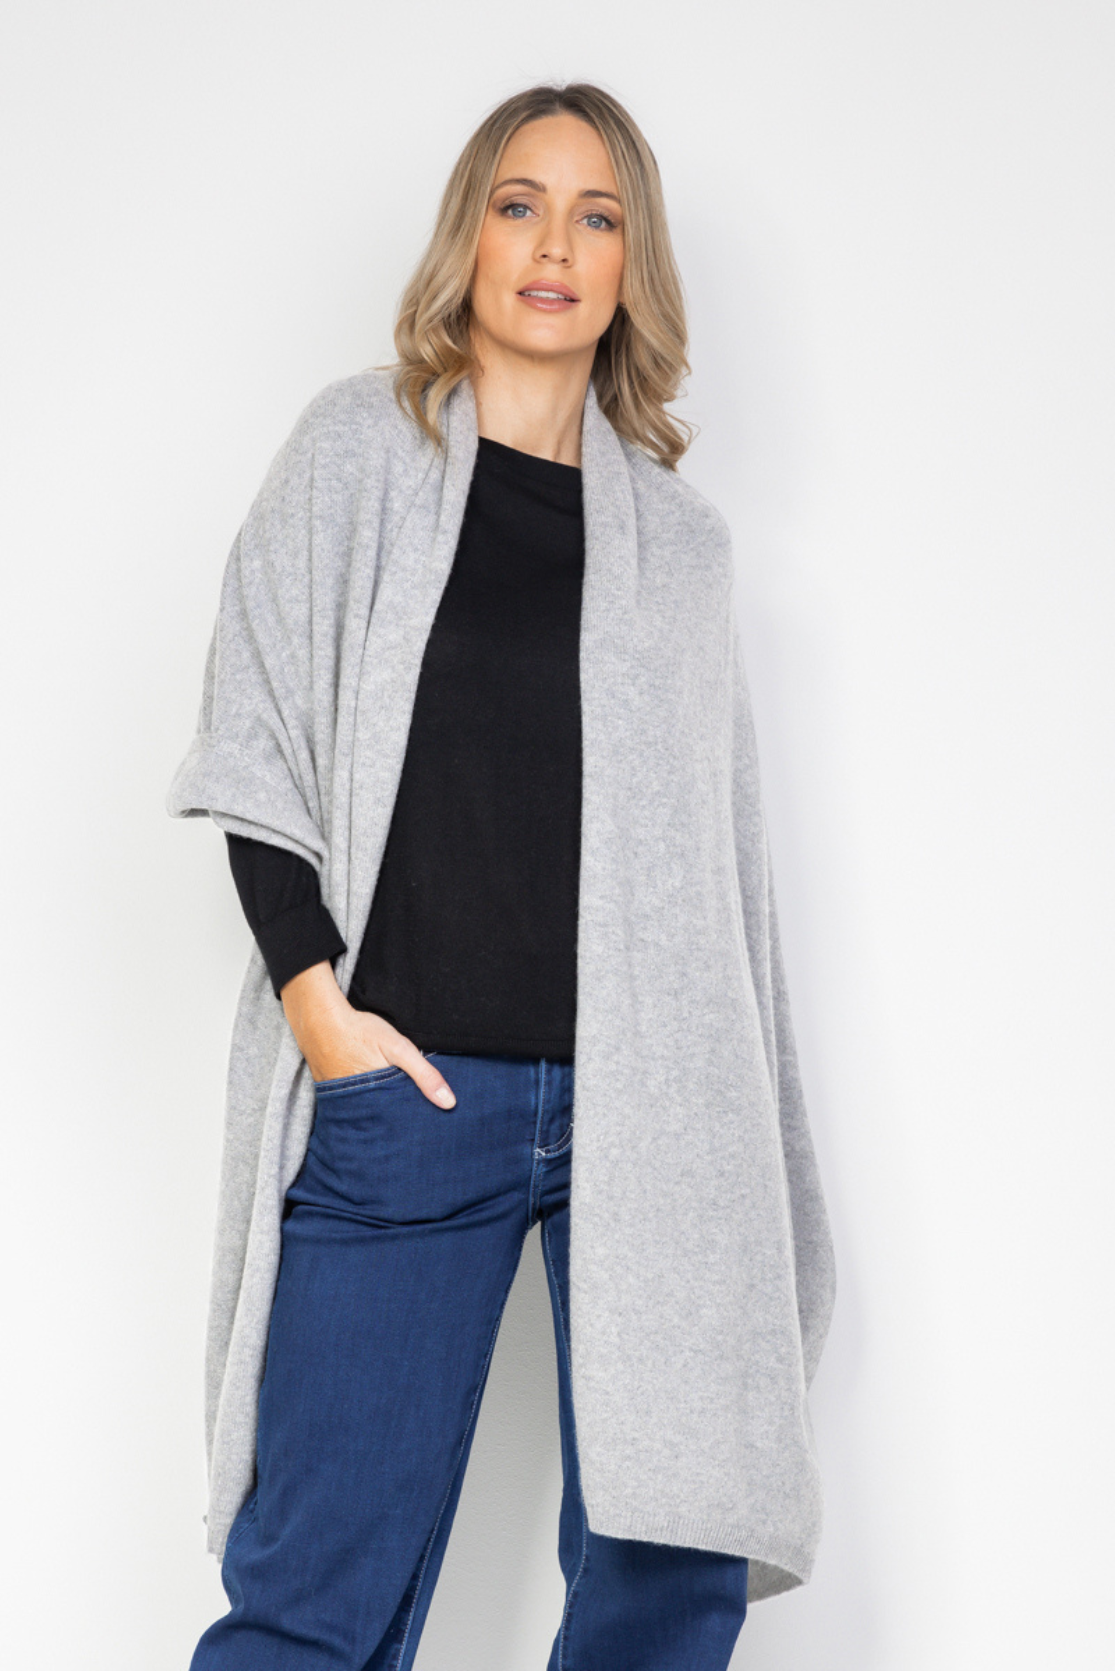 Cashmere Wrap - Silver Grey - Cara Cashmere